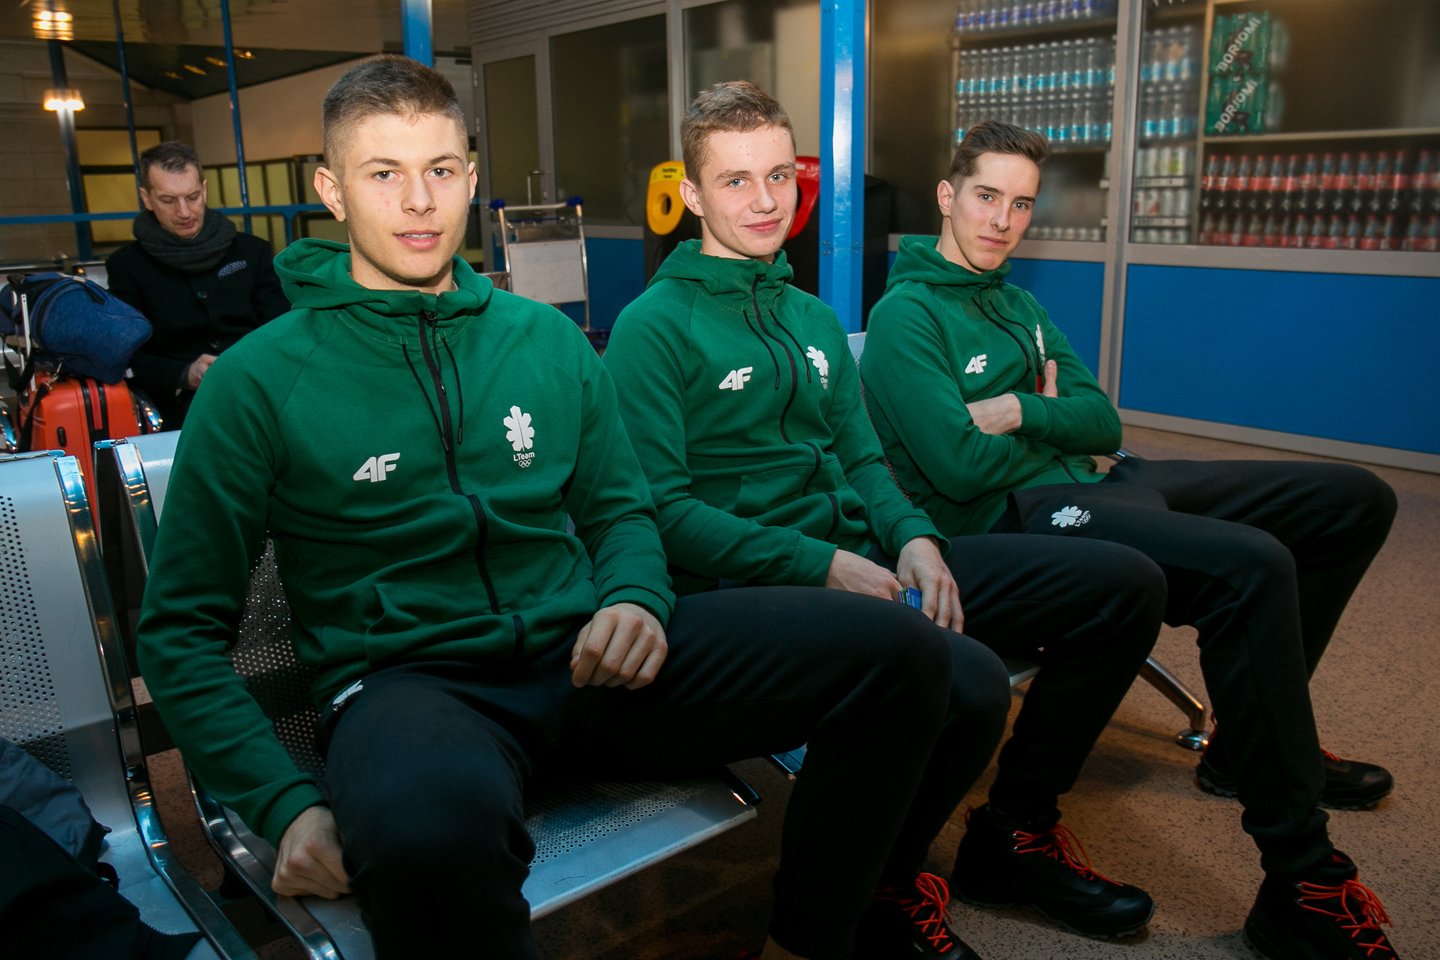  Lietuvos jaunieji sportininkai išlydėti į jaunimo olimpines žaidynes Lozanoje <br> S.Čirbos nuotr.